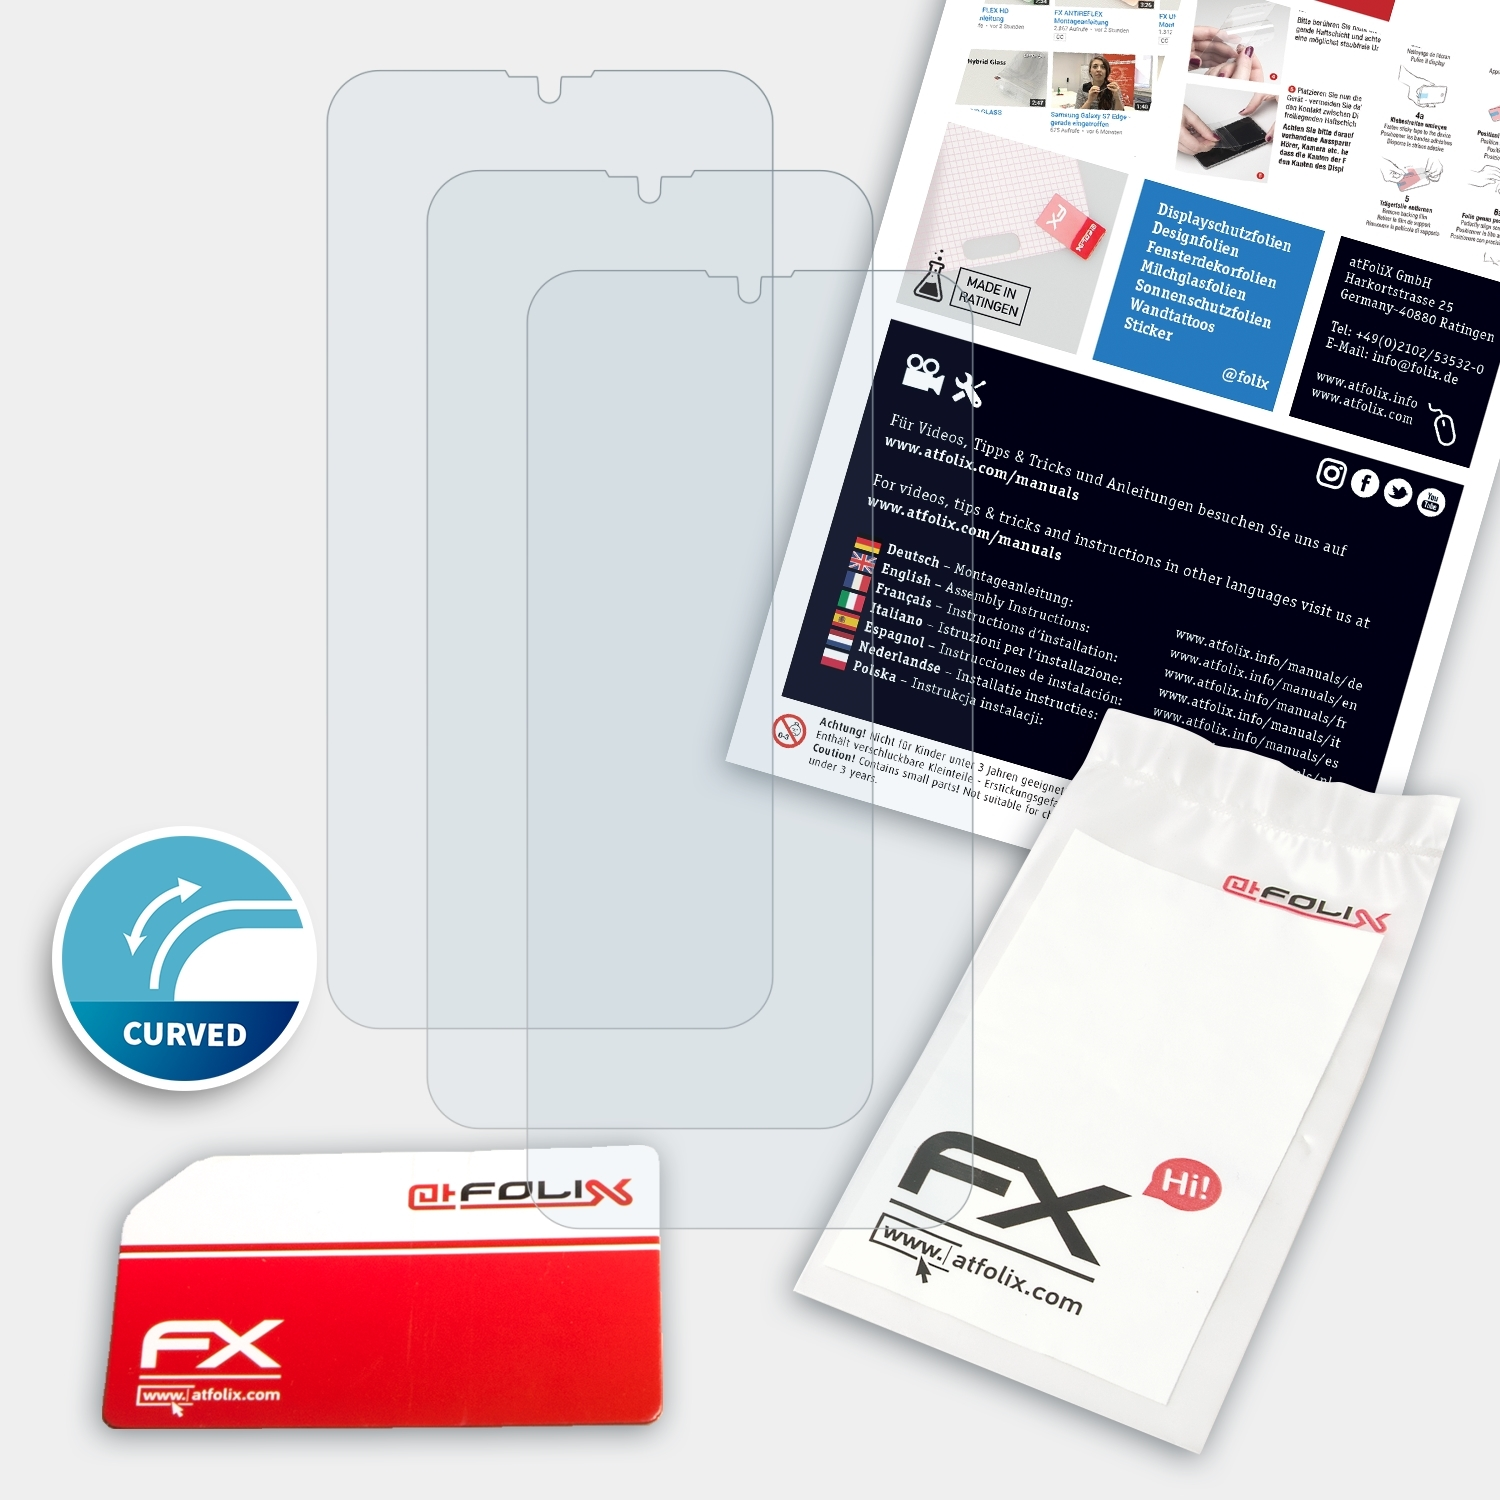 ATFOLIX 3x Realme FX-ActiFleX Displayschutz(für X2) Oppo